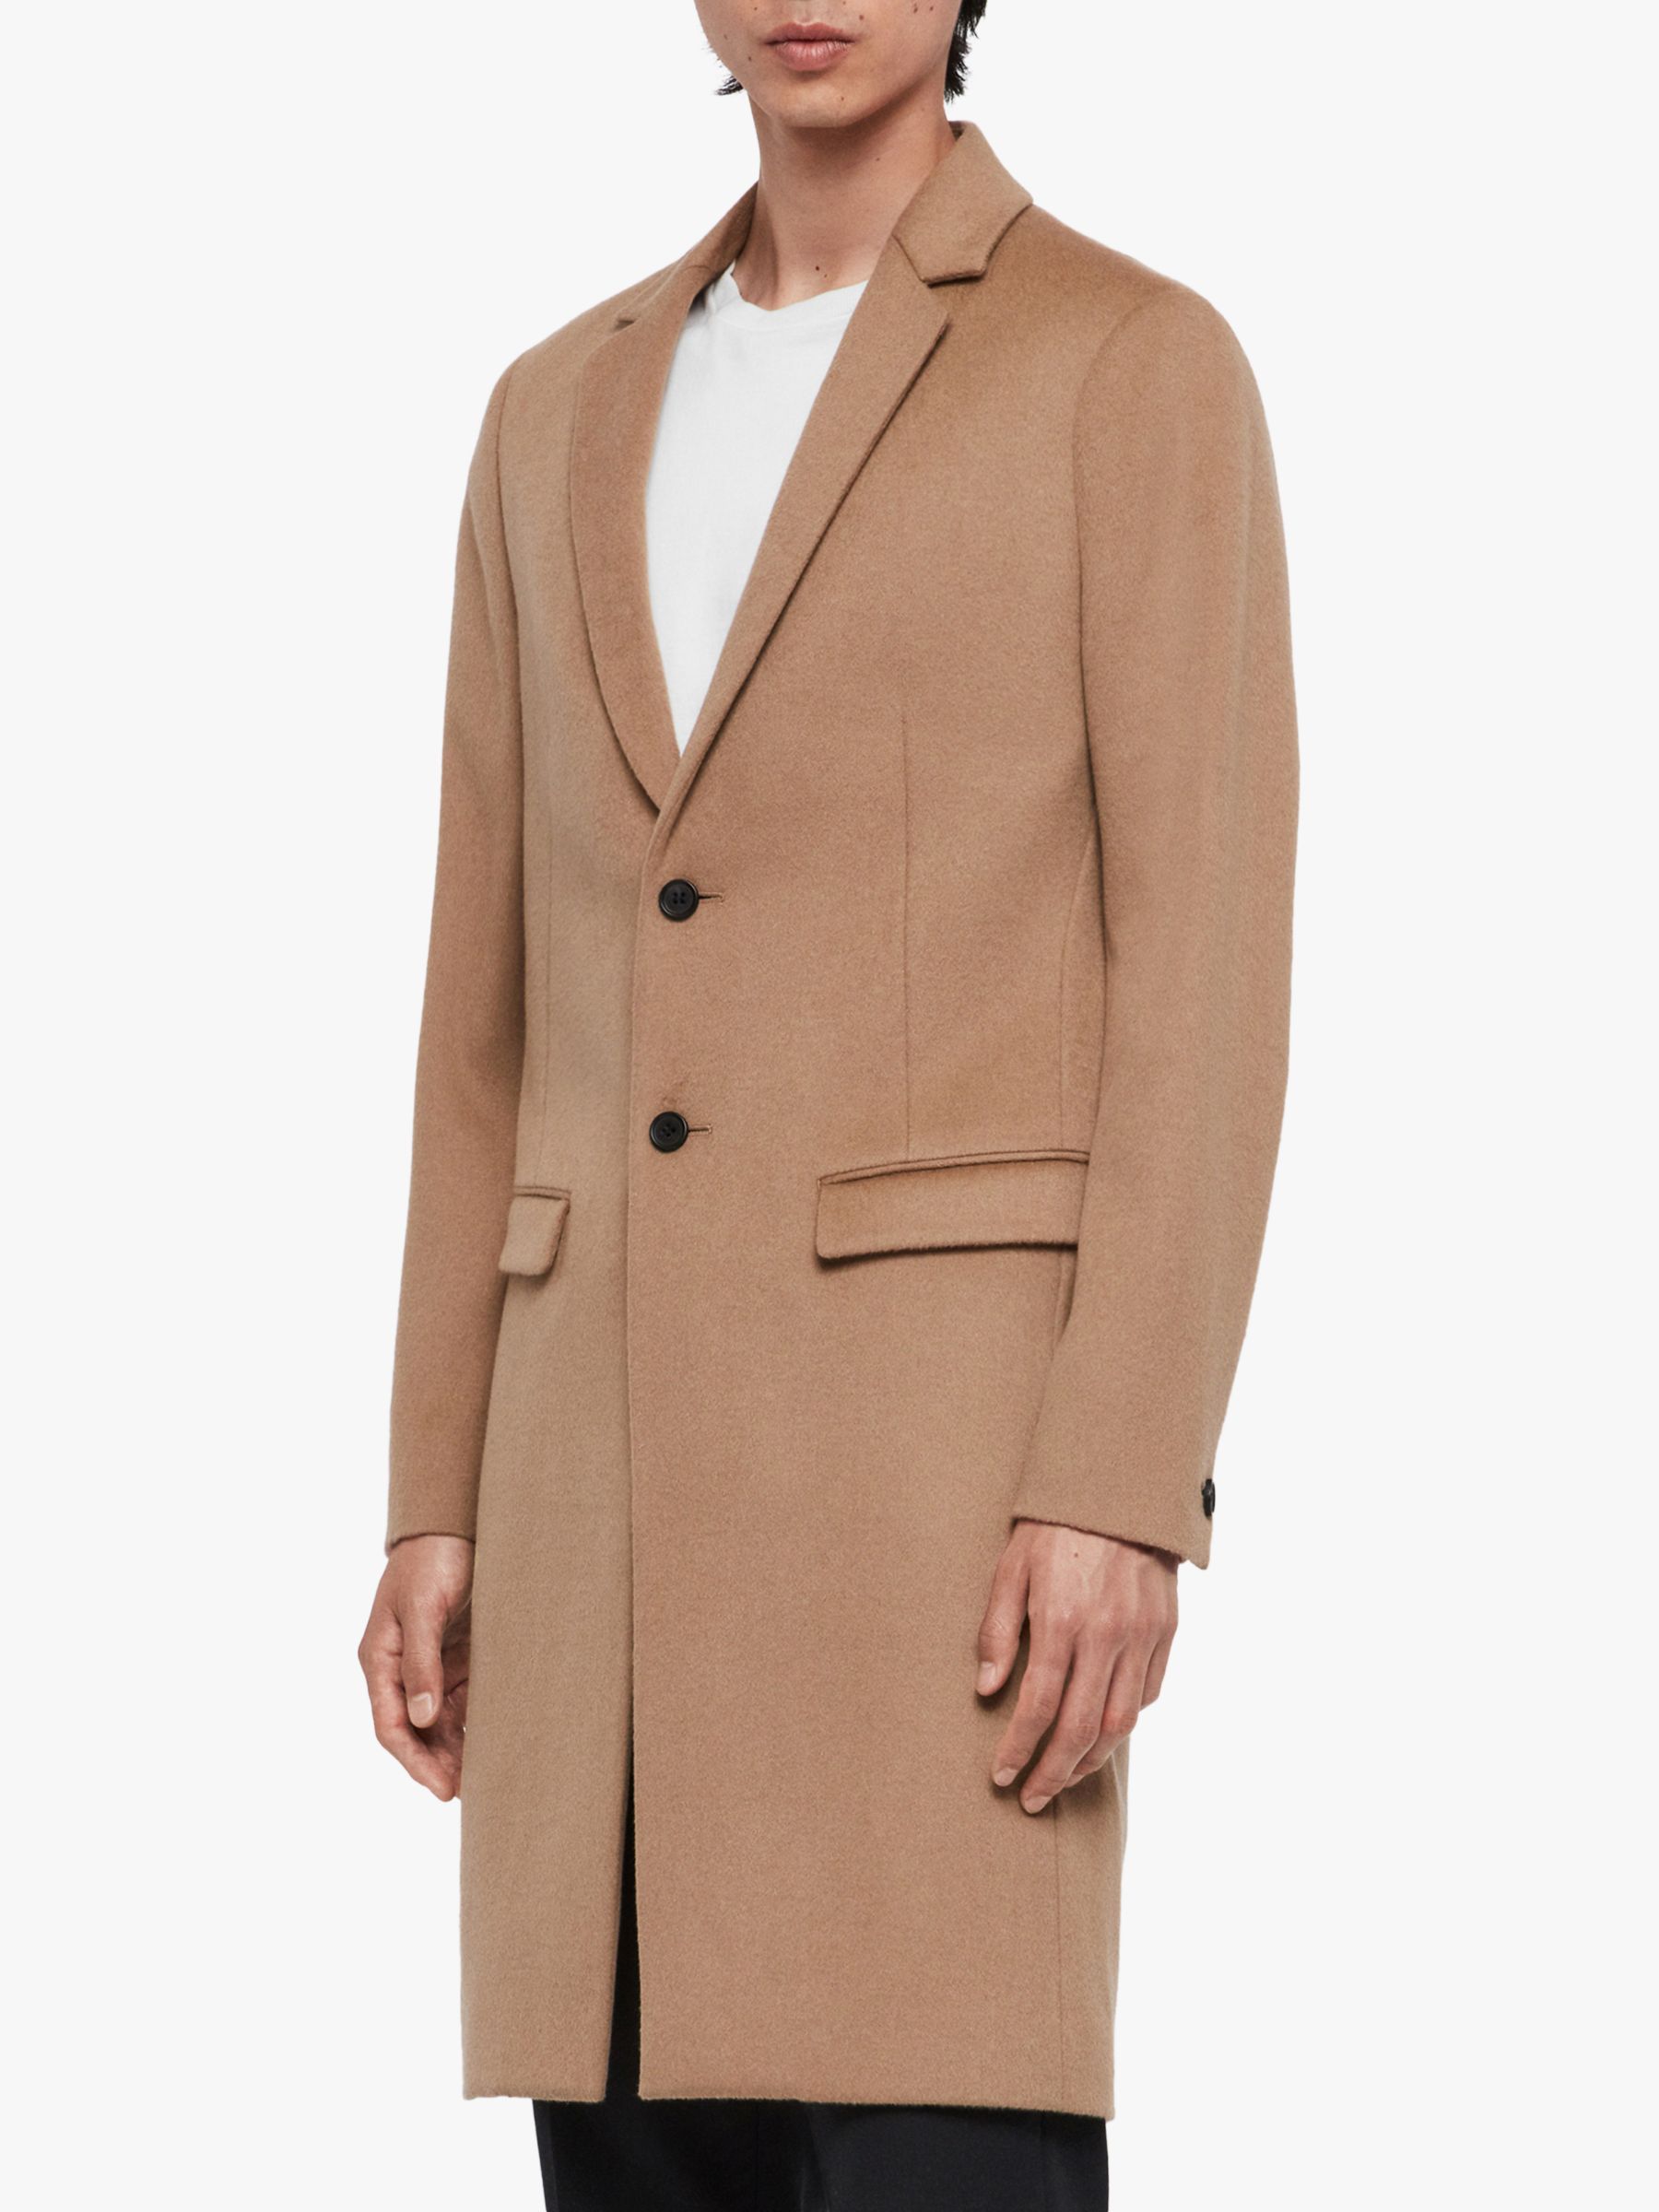 AllSaints Birdstow Coat, Camel Brown, 34R